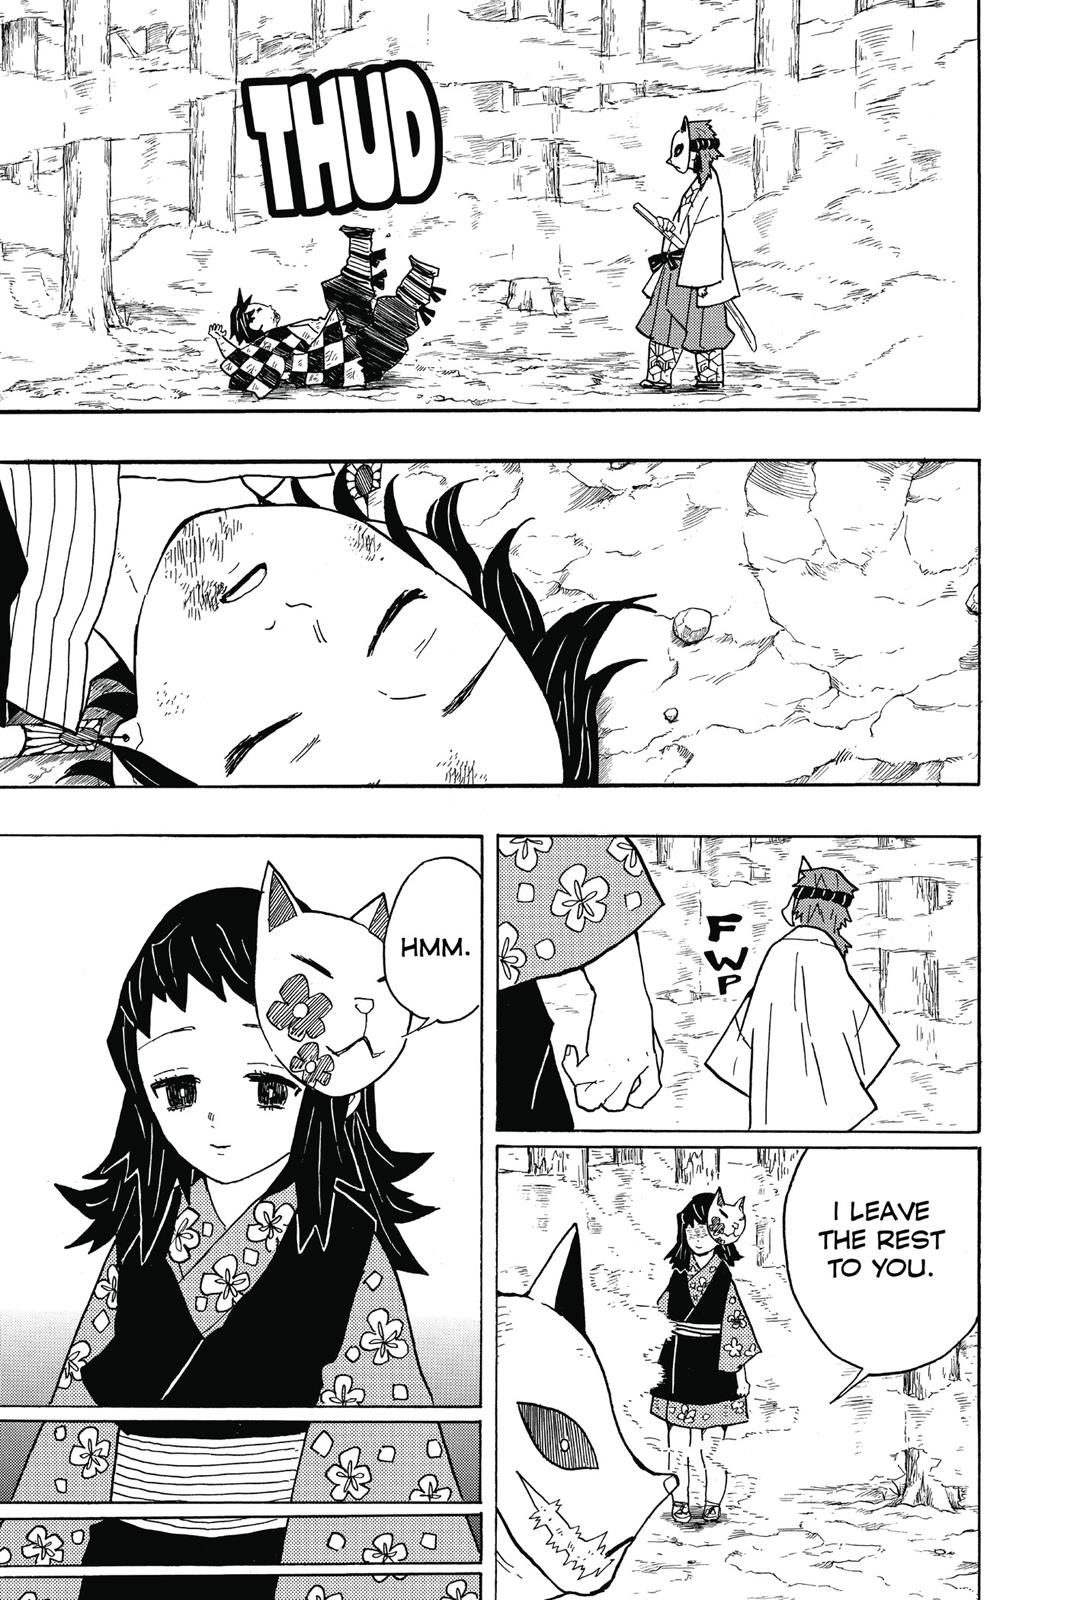 Demon Slayer Manga Manga Chapter - 5 - image 4